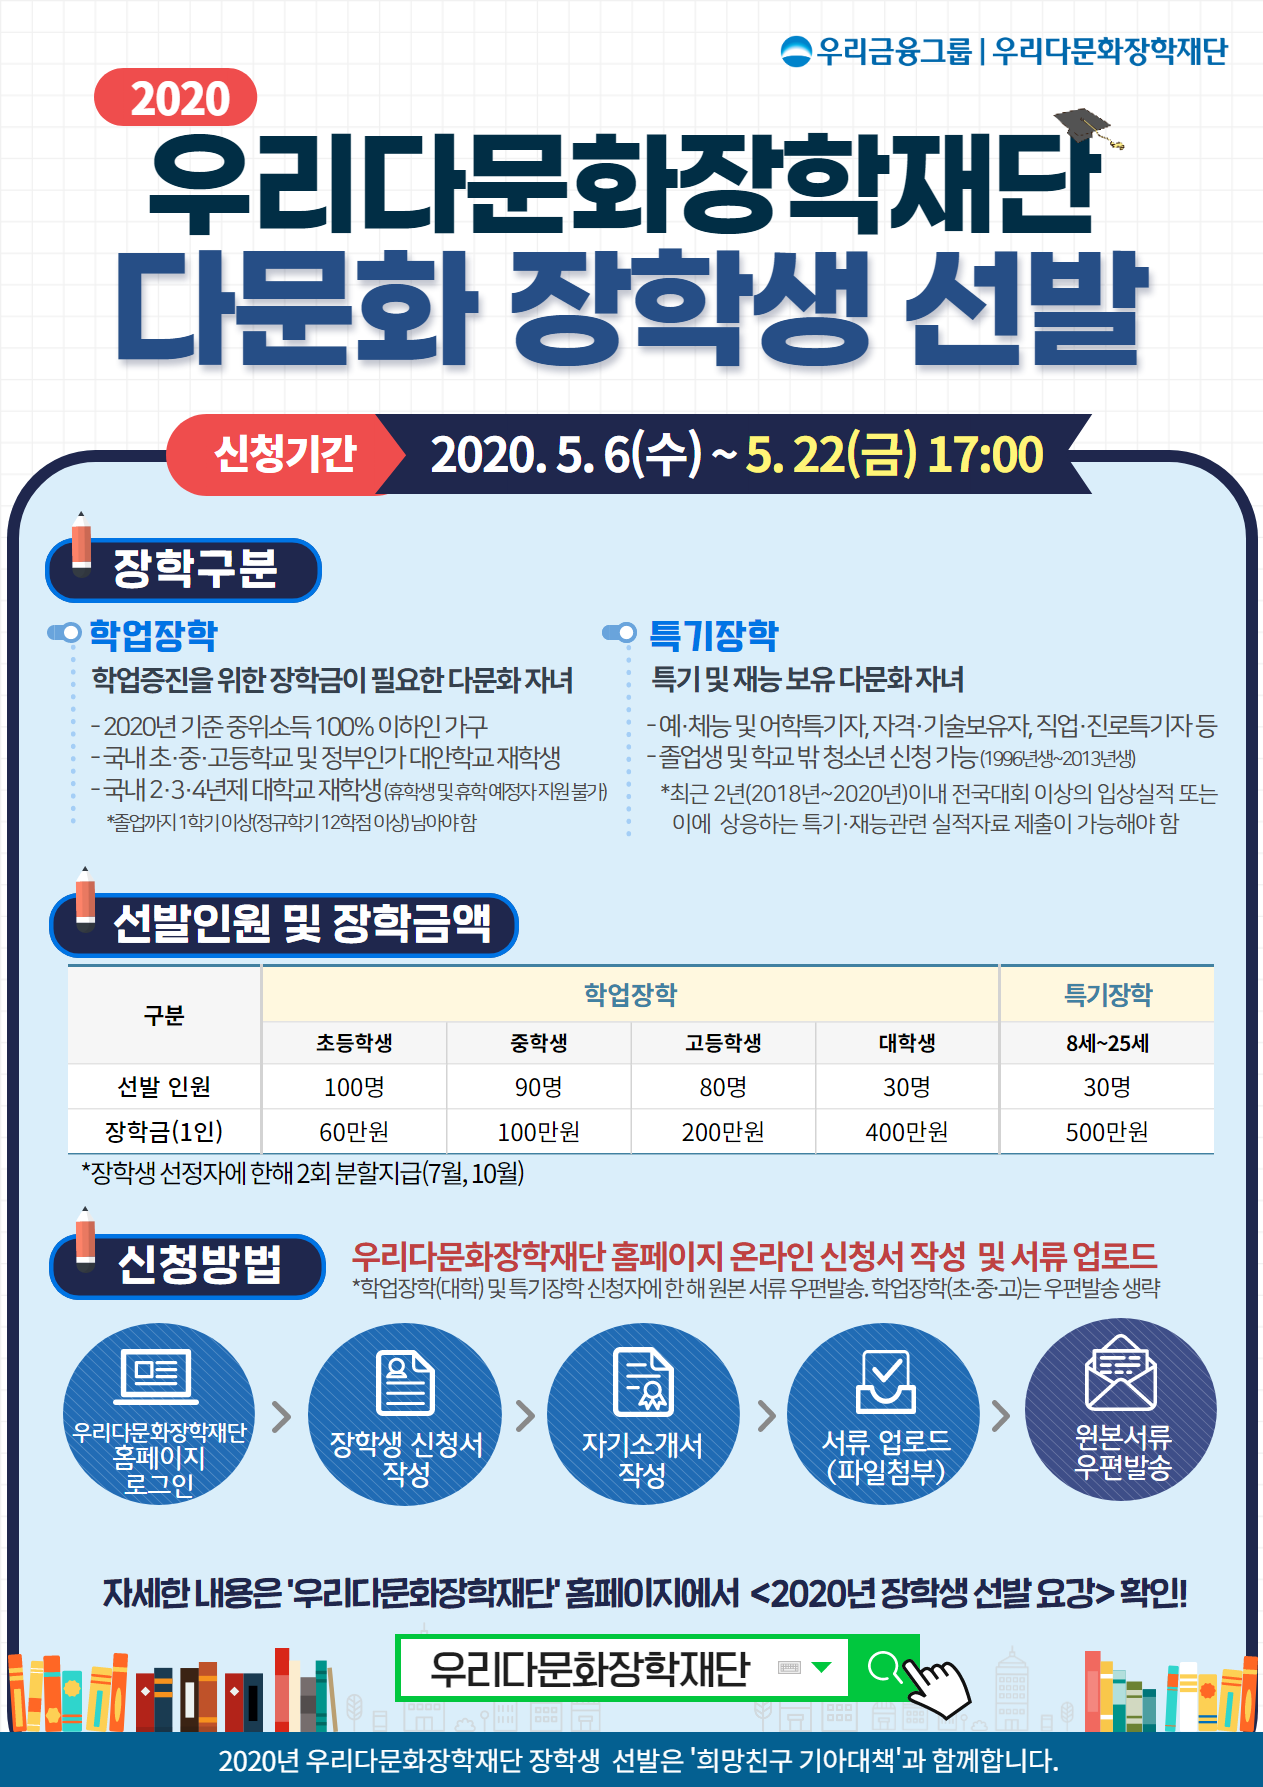 [붙임3] 2020년 우리다문화장학재단 장학생 선발 홍보지.png